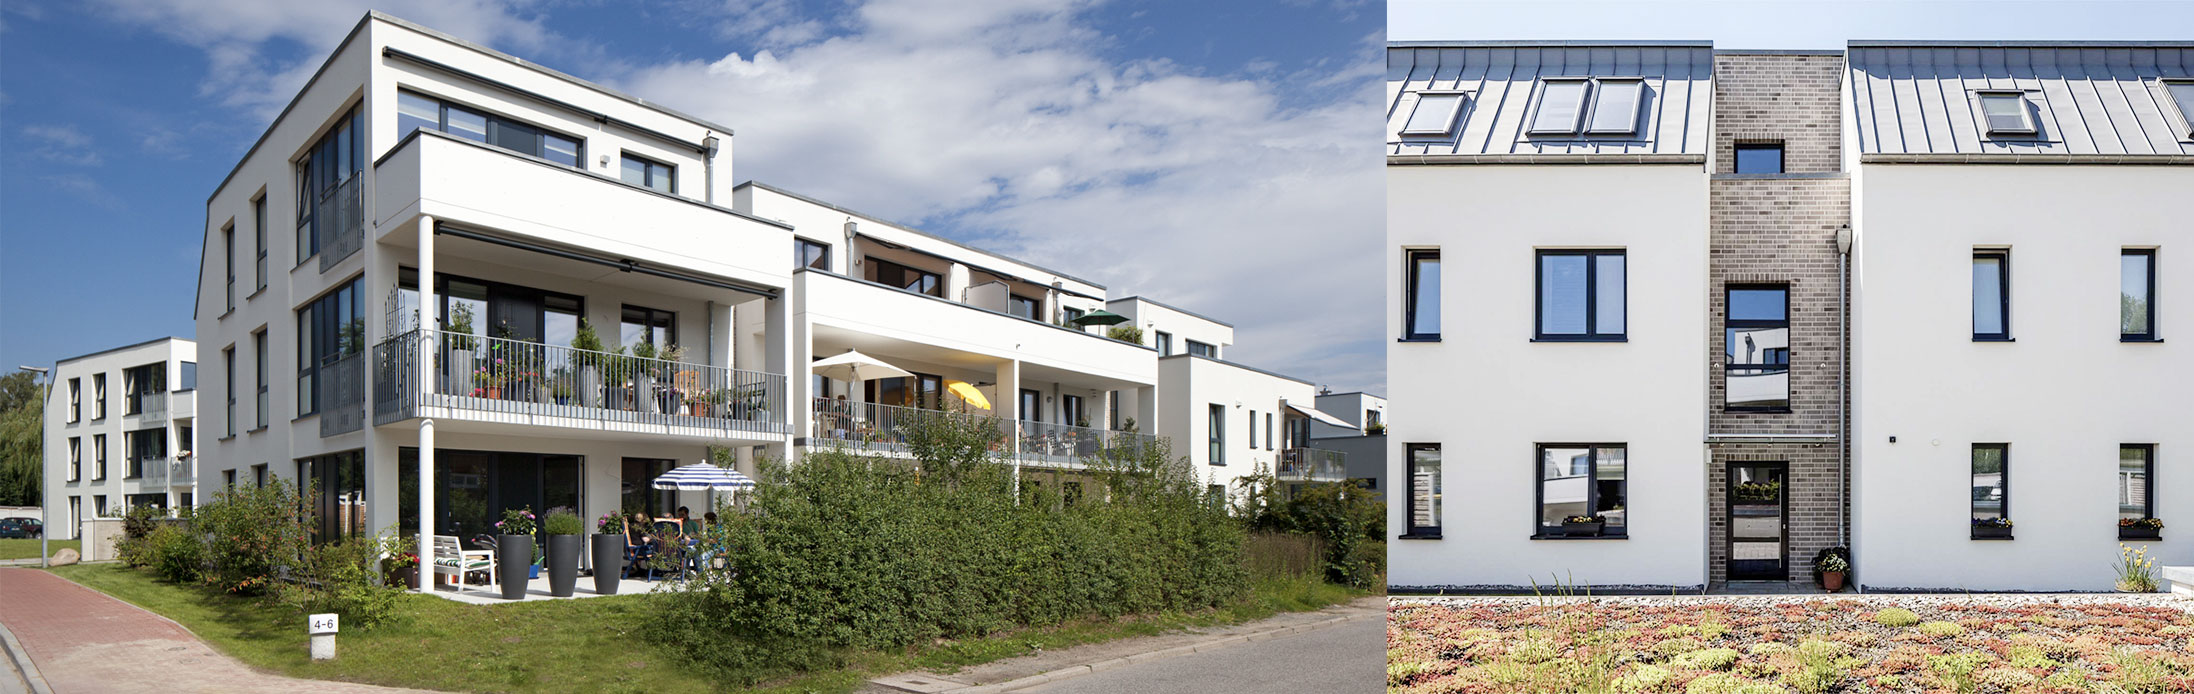 Wedel – Wiedestraße | Mehrfamilienhaus | 28 Wohneinheiten | Aufzug | Tiefgarage | Baujahr 2015